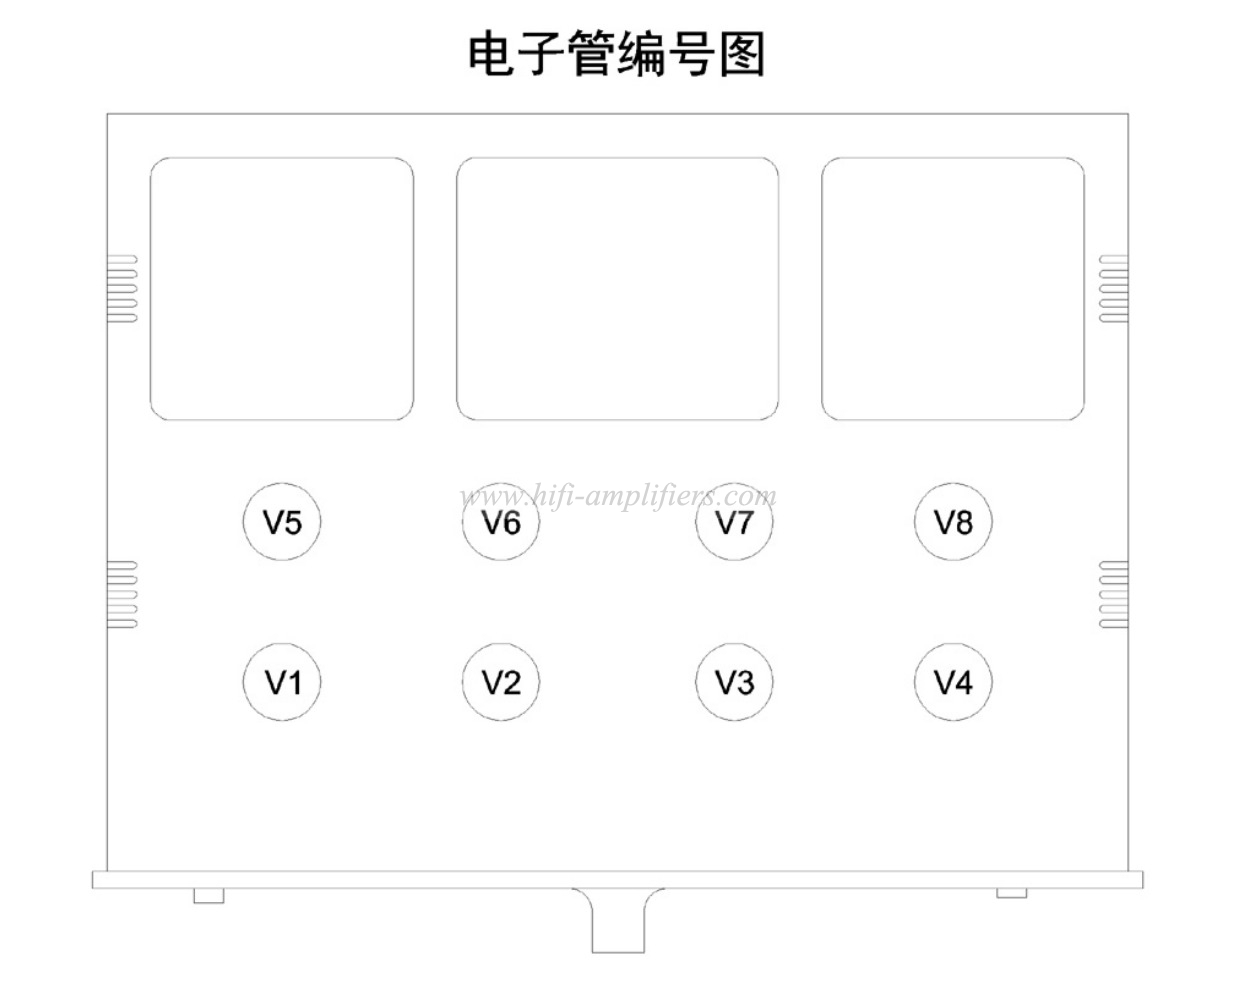 블루투스 및 원격 제어 기능을 갖춘 XiangSheng HIFI 헤드폰 프리앰프